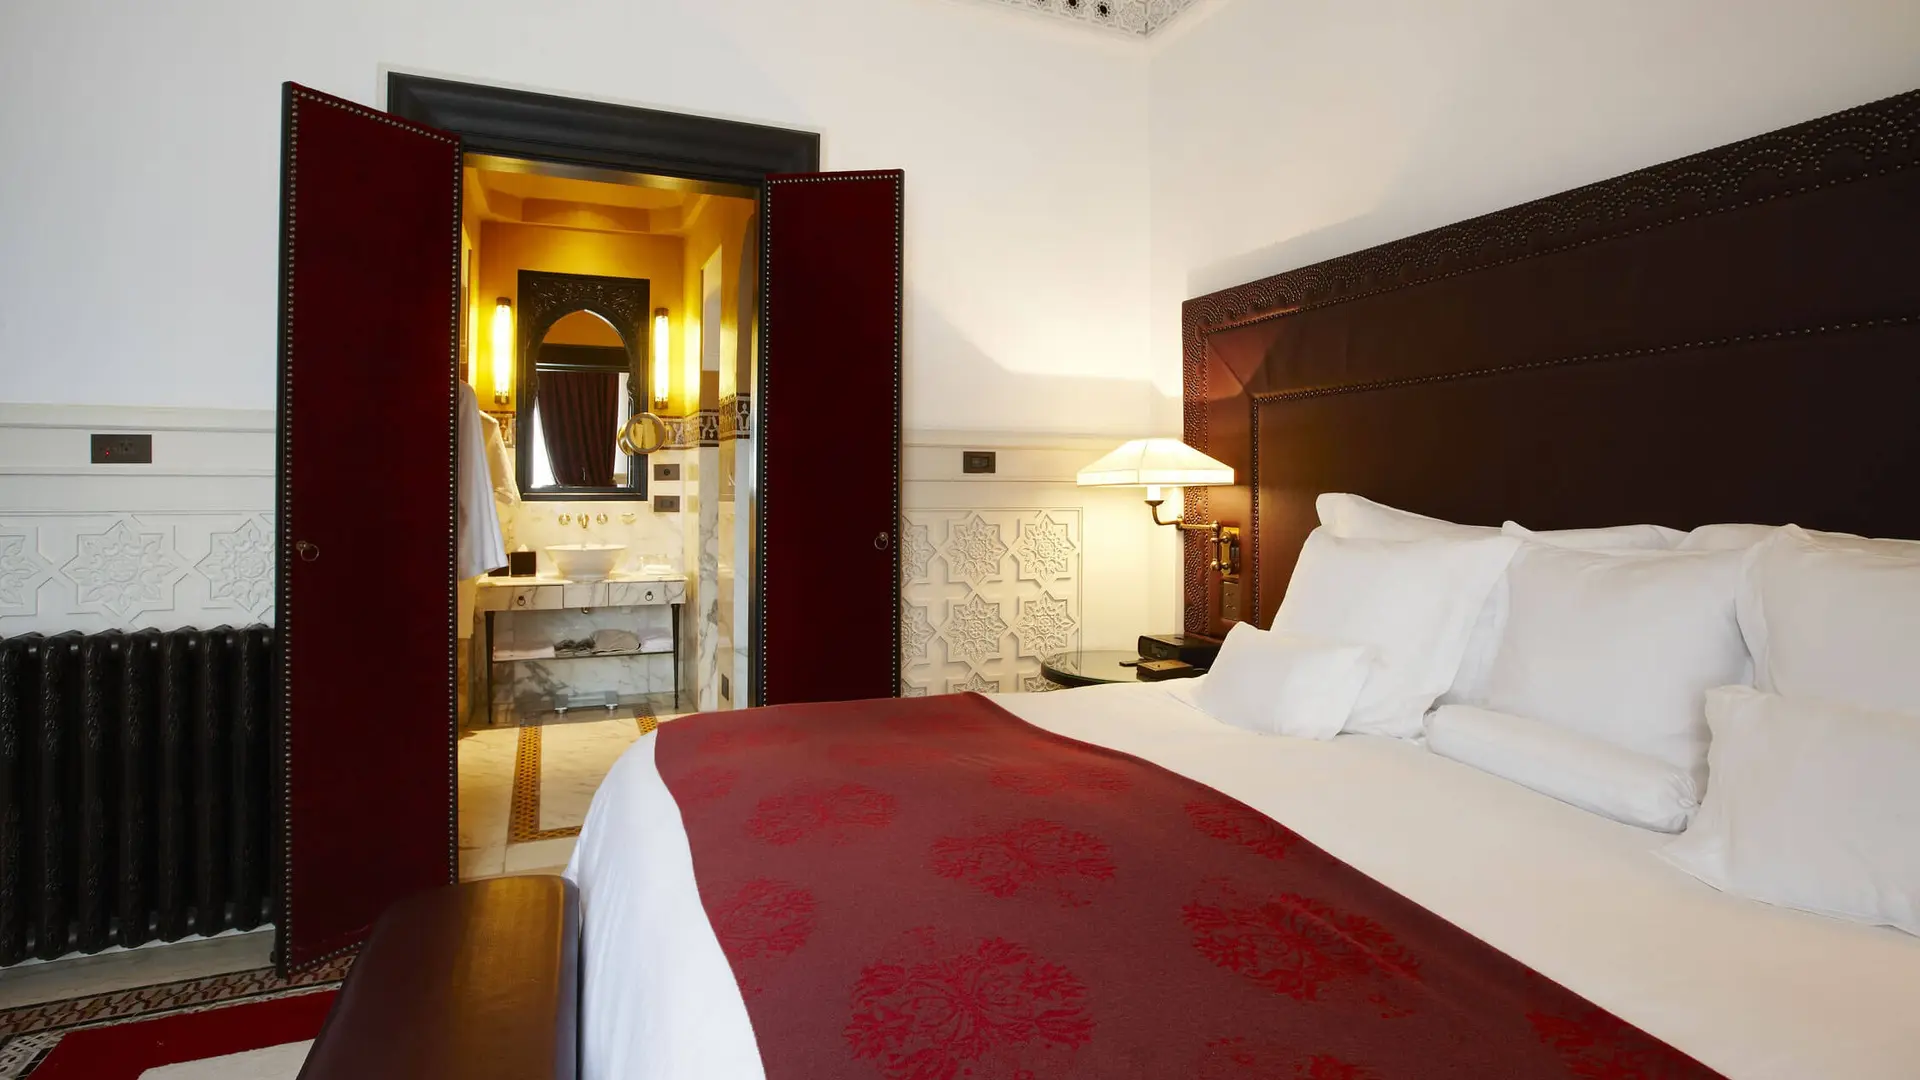 Hotel review Accommodation' - La Mamounia - 8